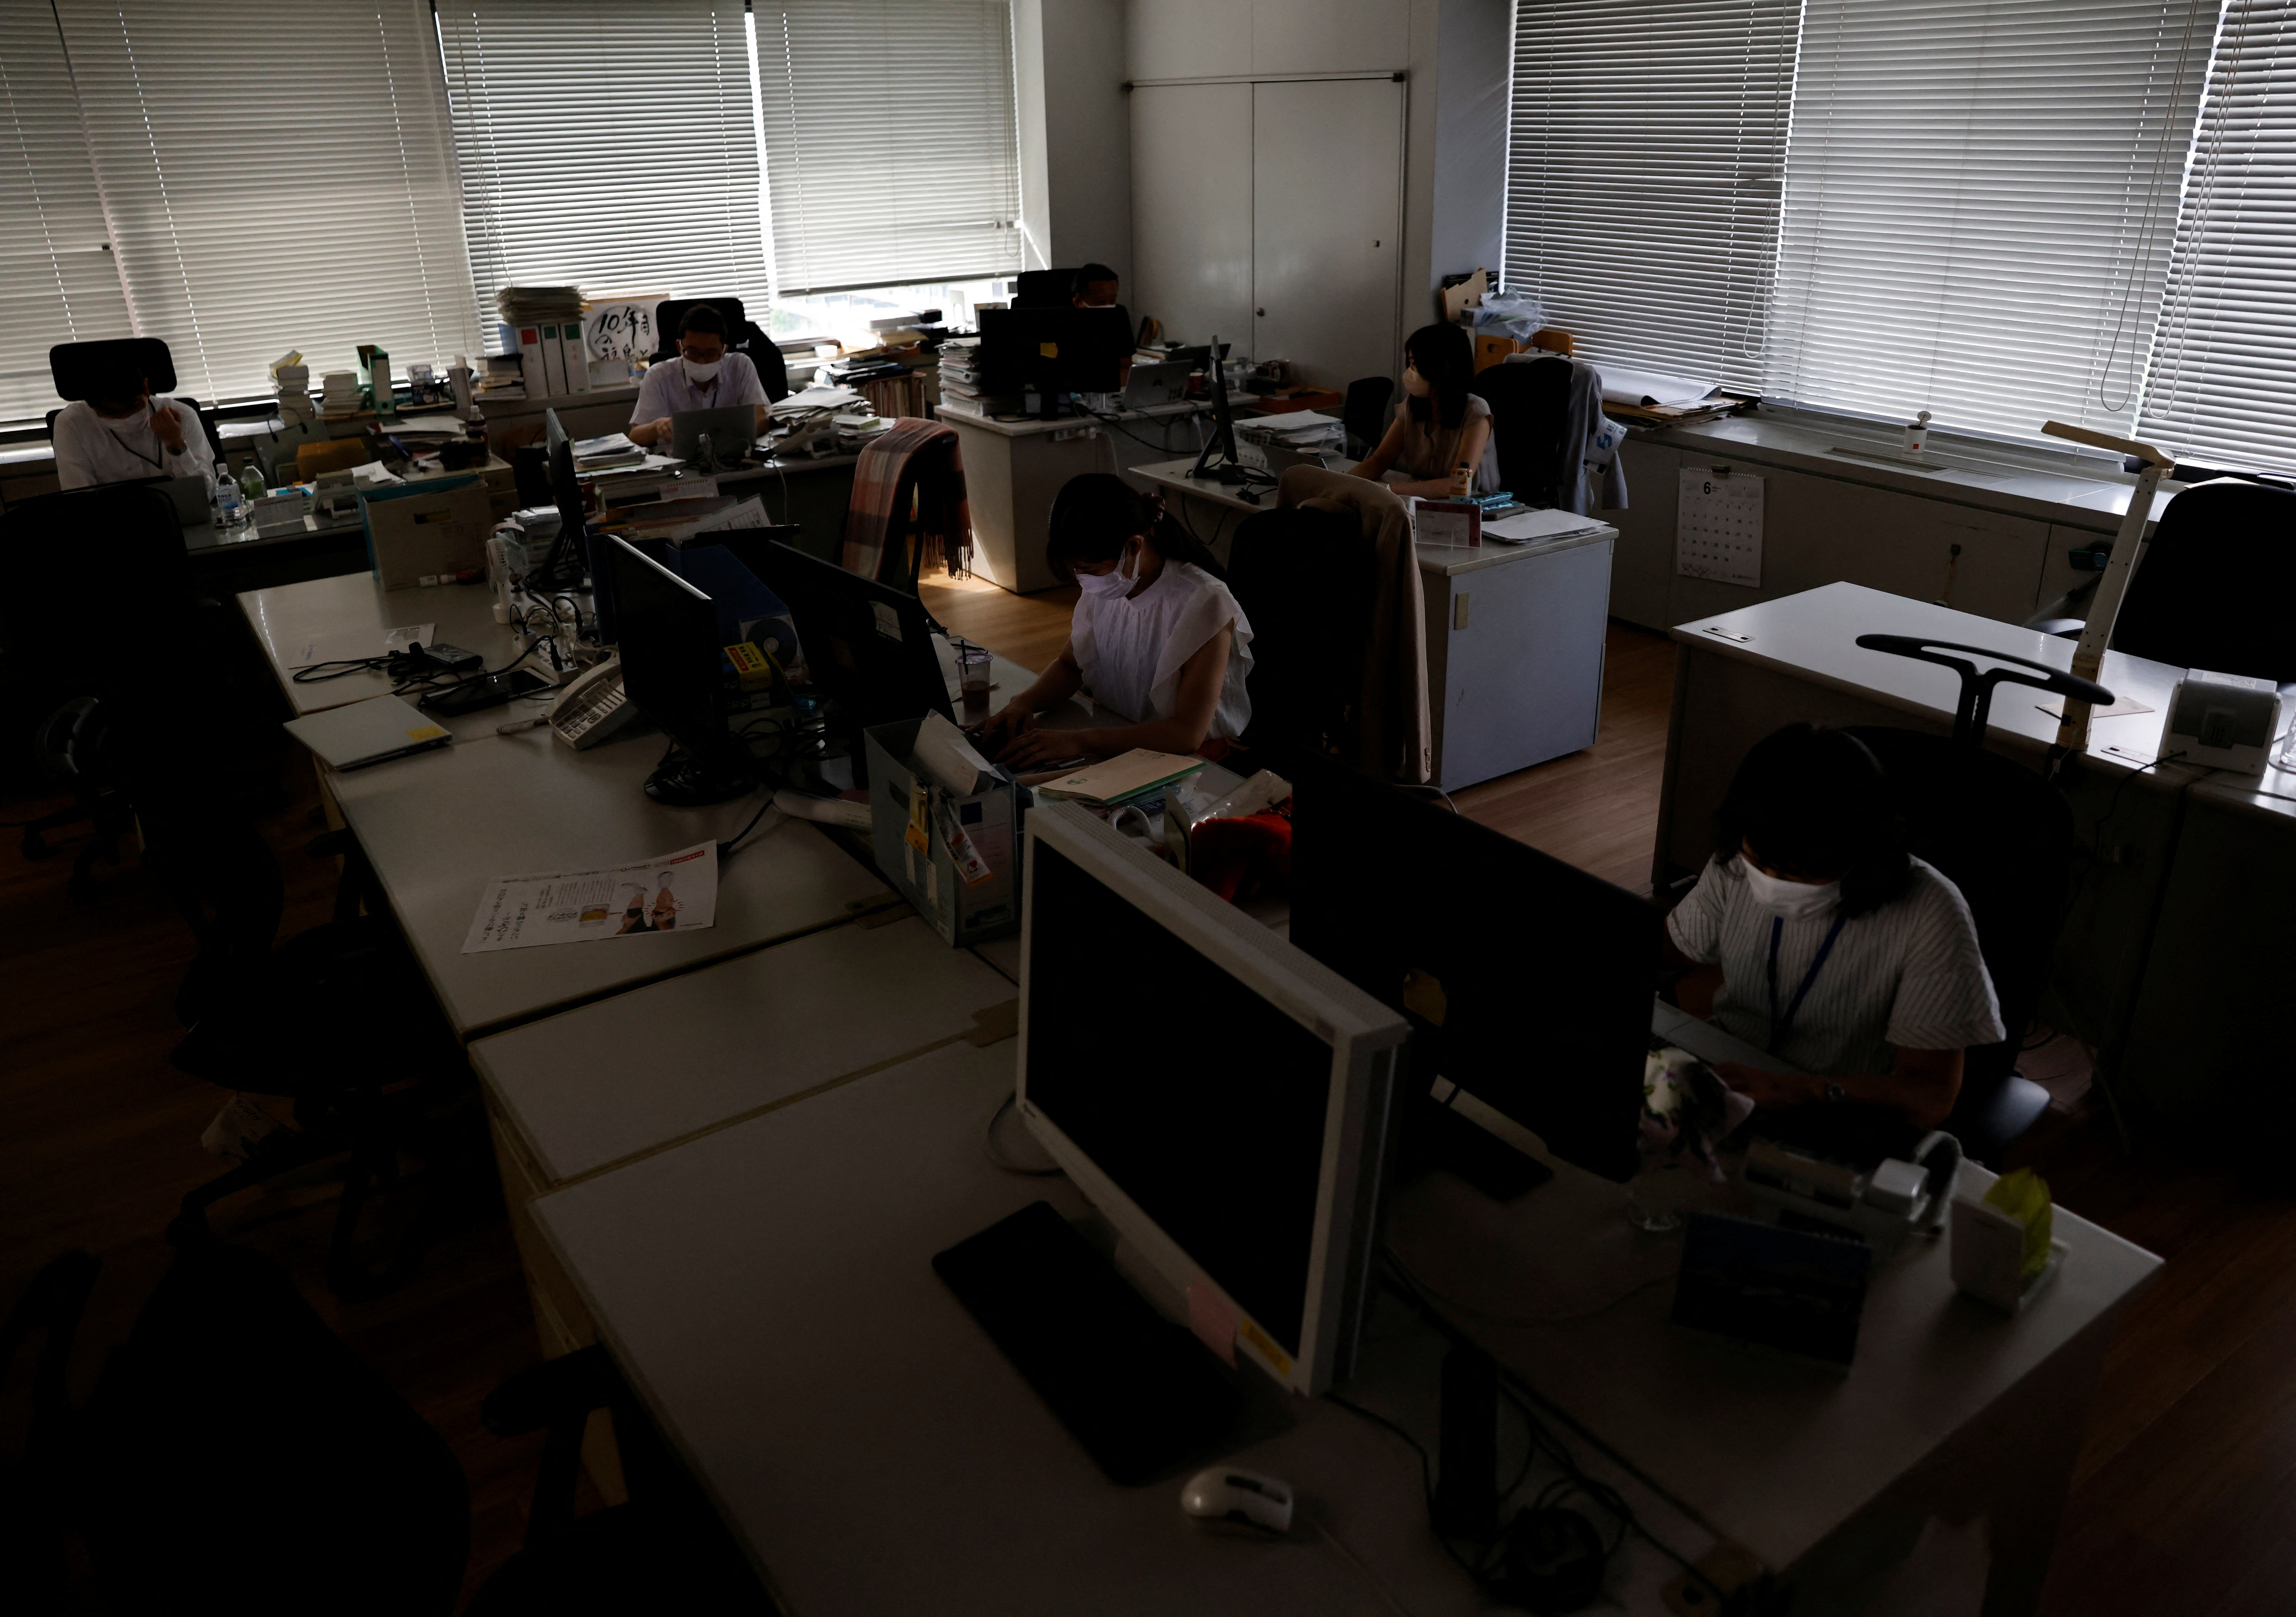 Japan braces for power crunch as heat mounts